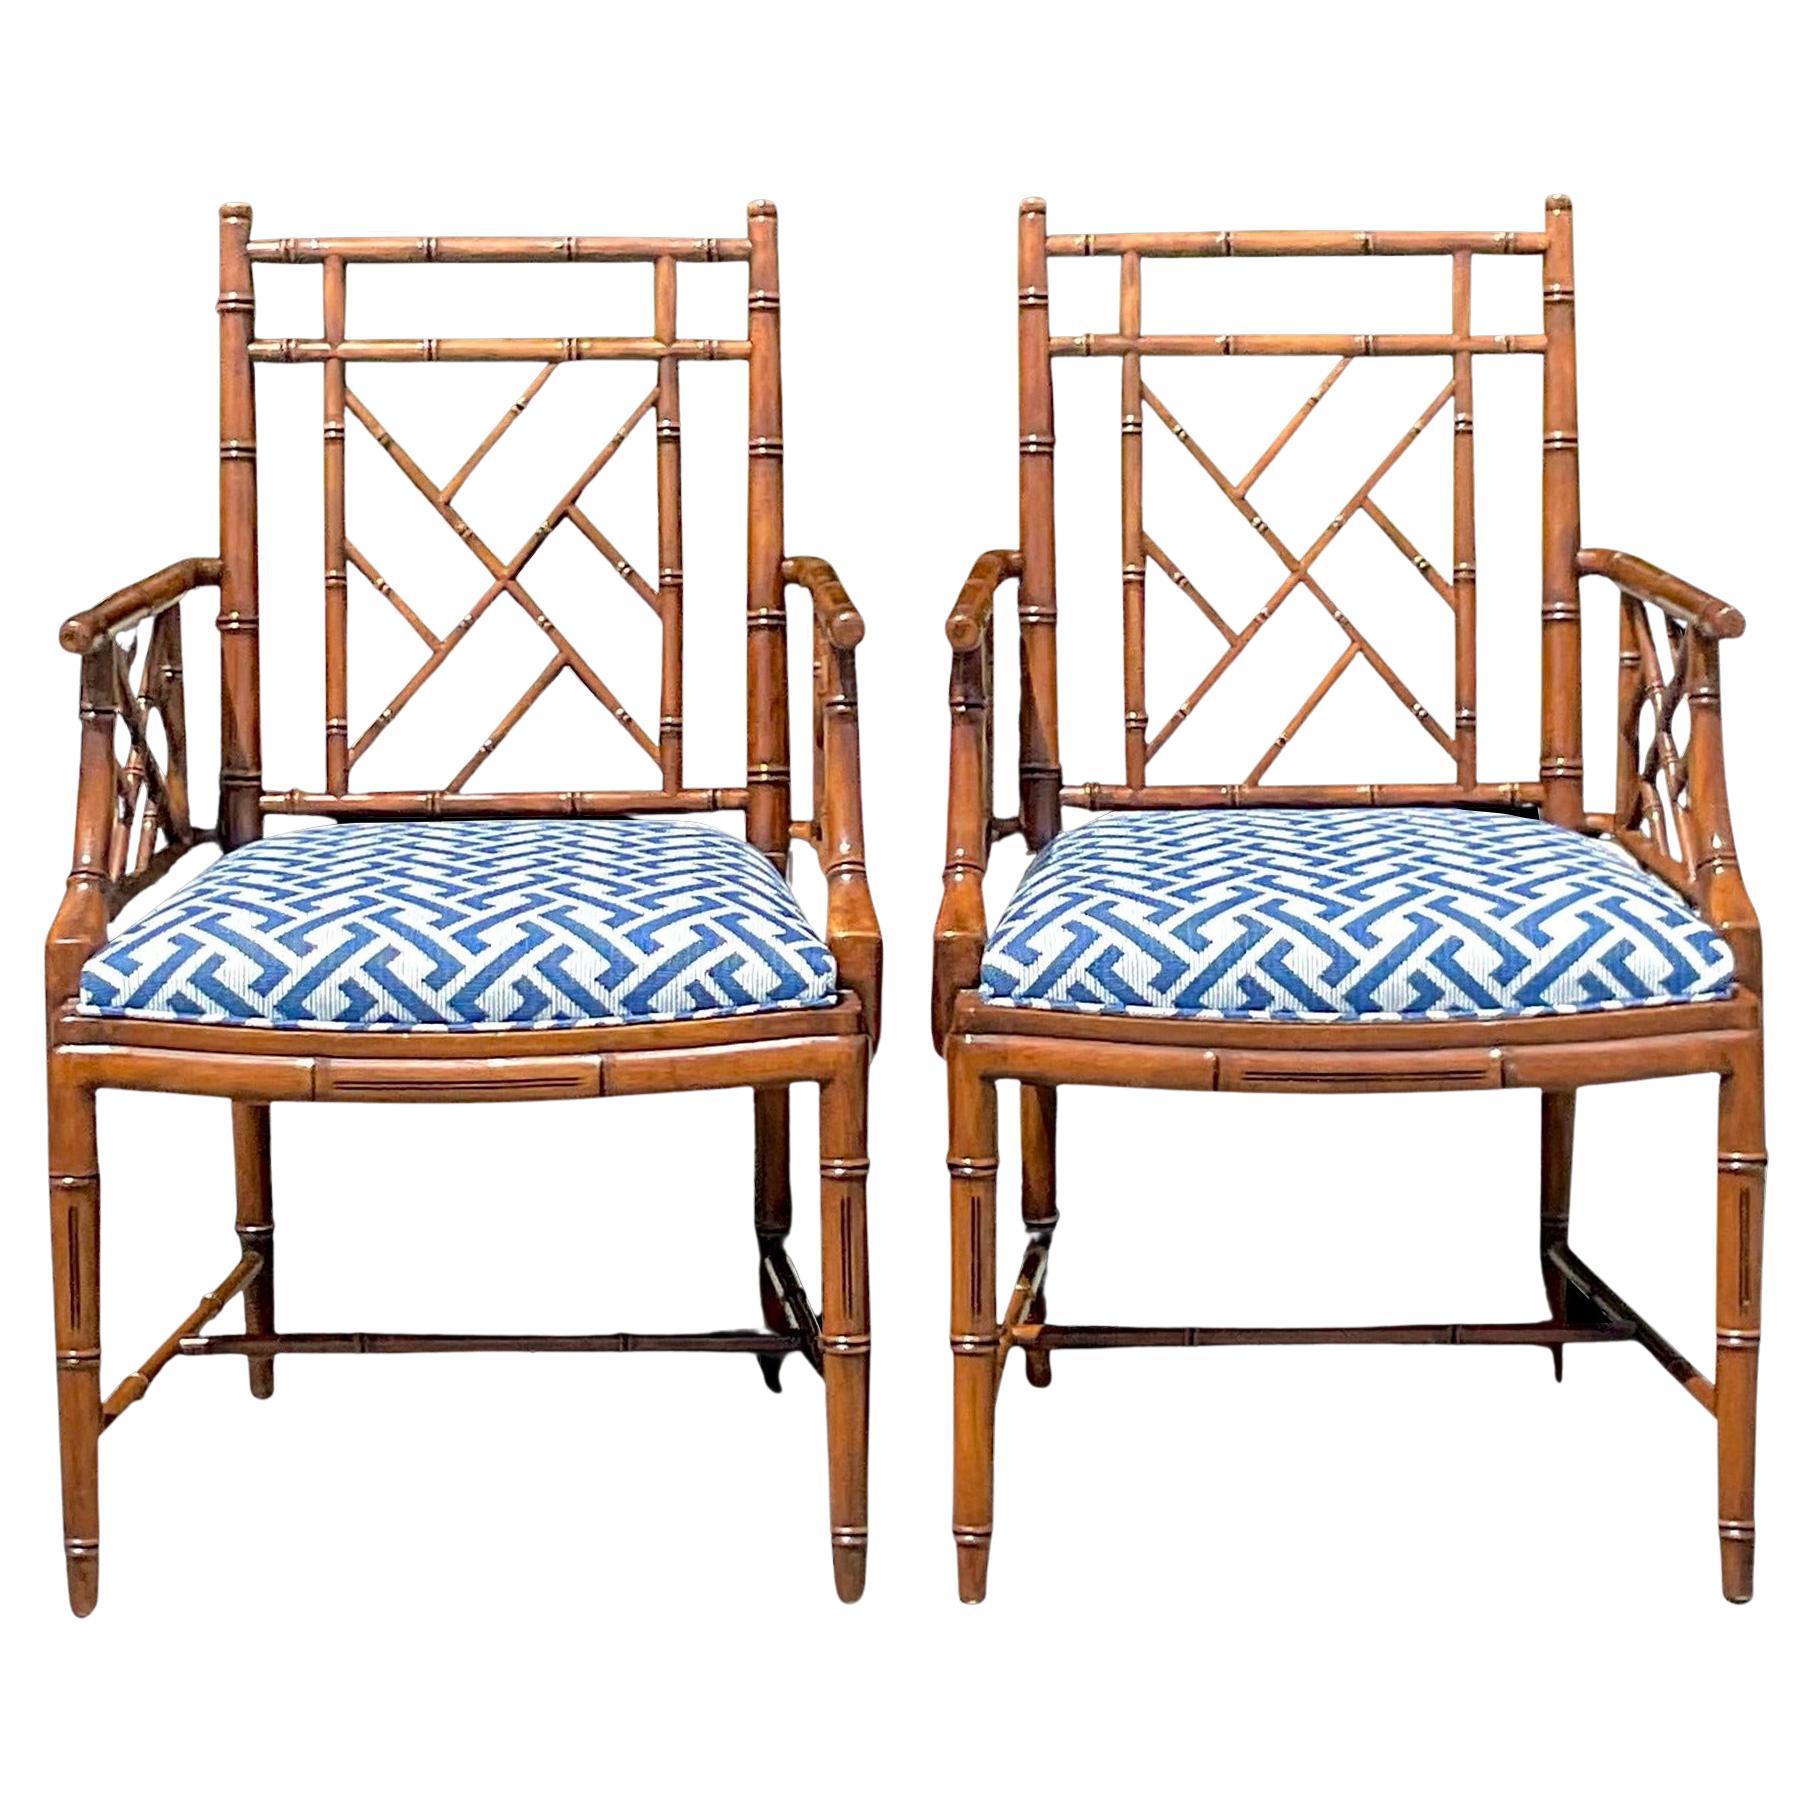 Paire de fauteuils Chippendale chinois de style Regency vintage William Switzer